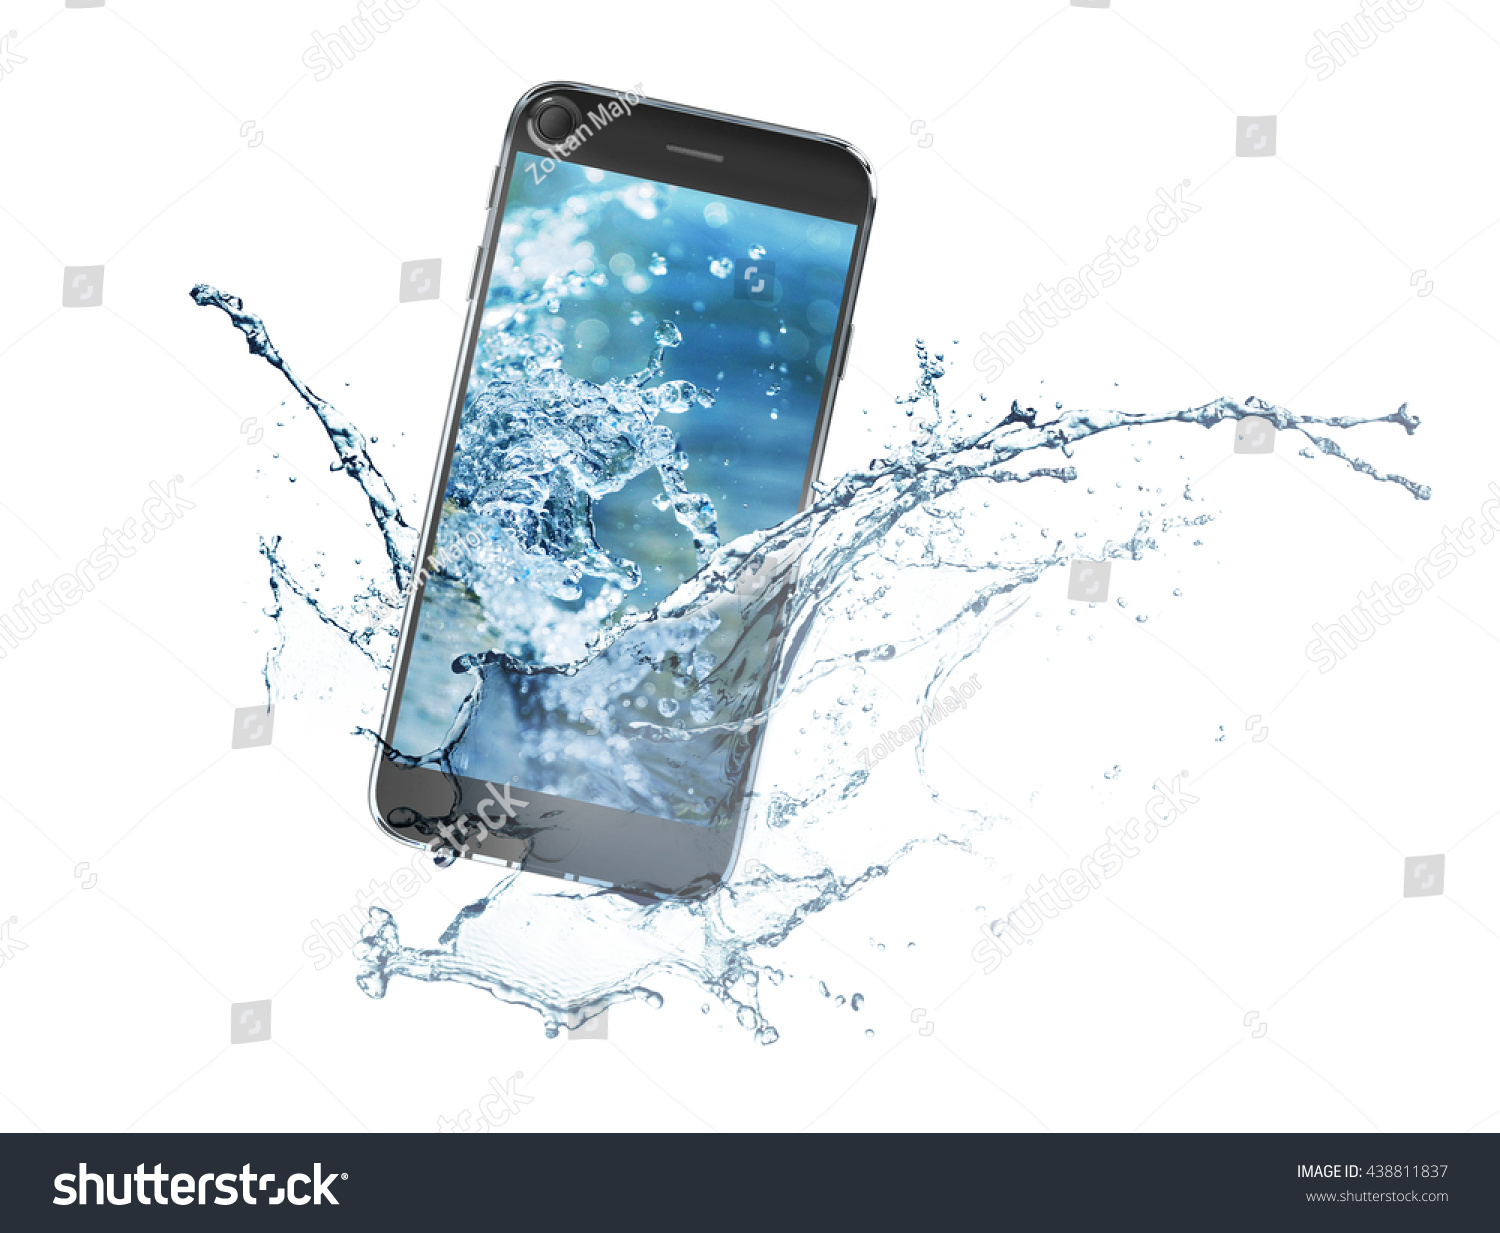 Смартфон упал в воду. Смартфон в воде. Смартфон падает в воду. Айфон в воде. Изображение смартфона.